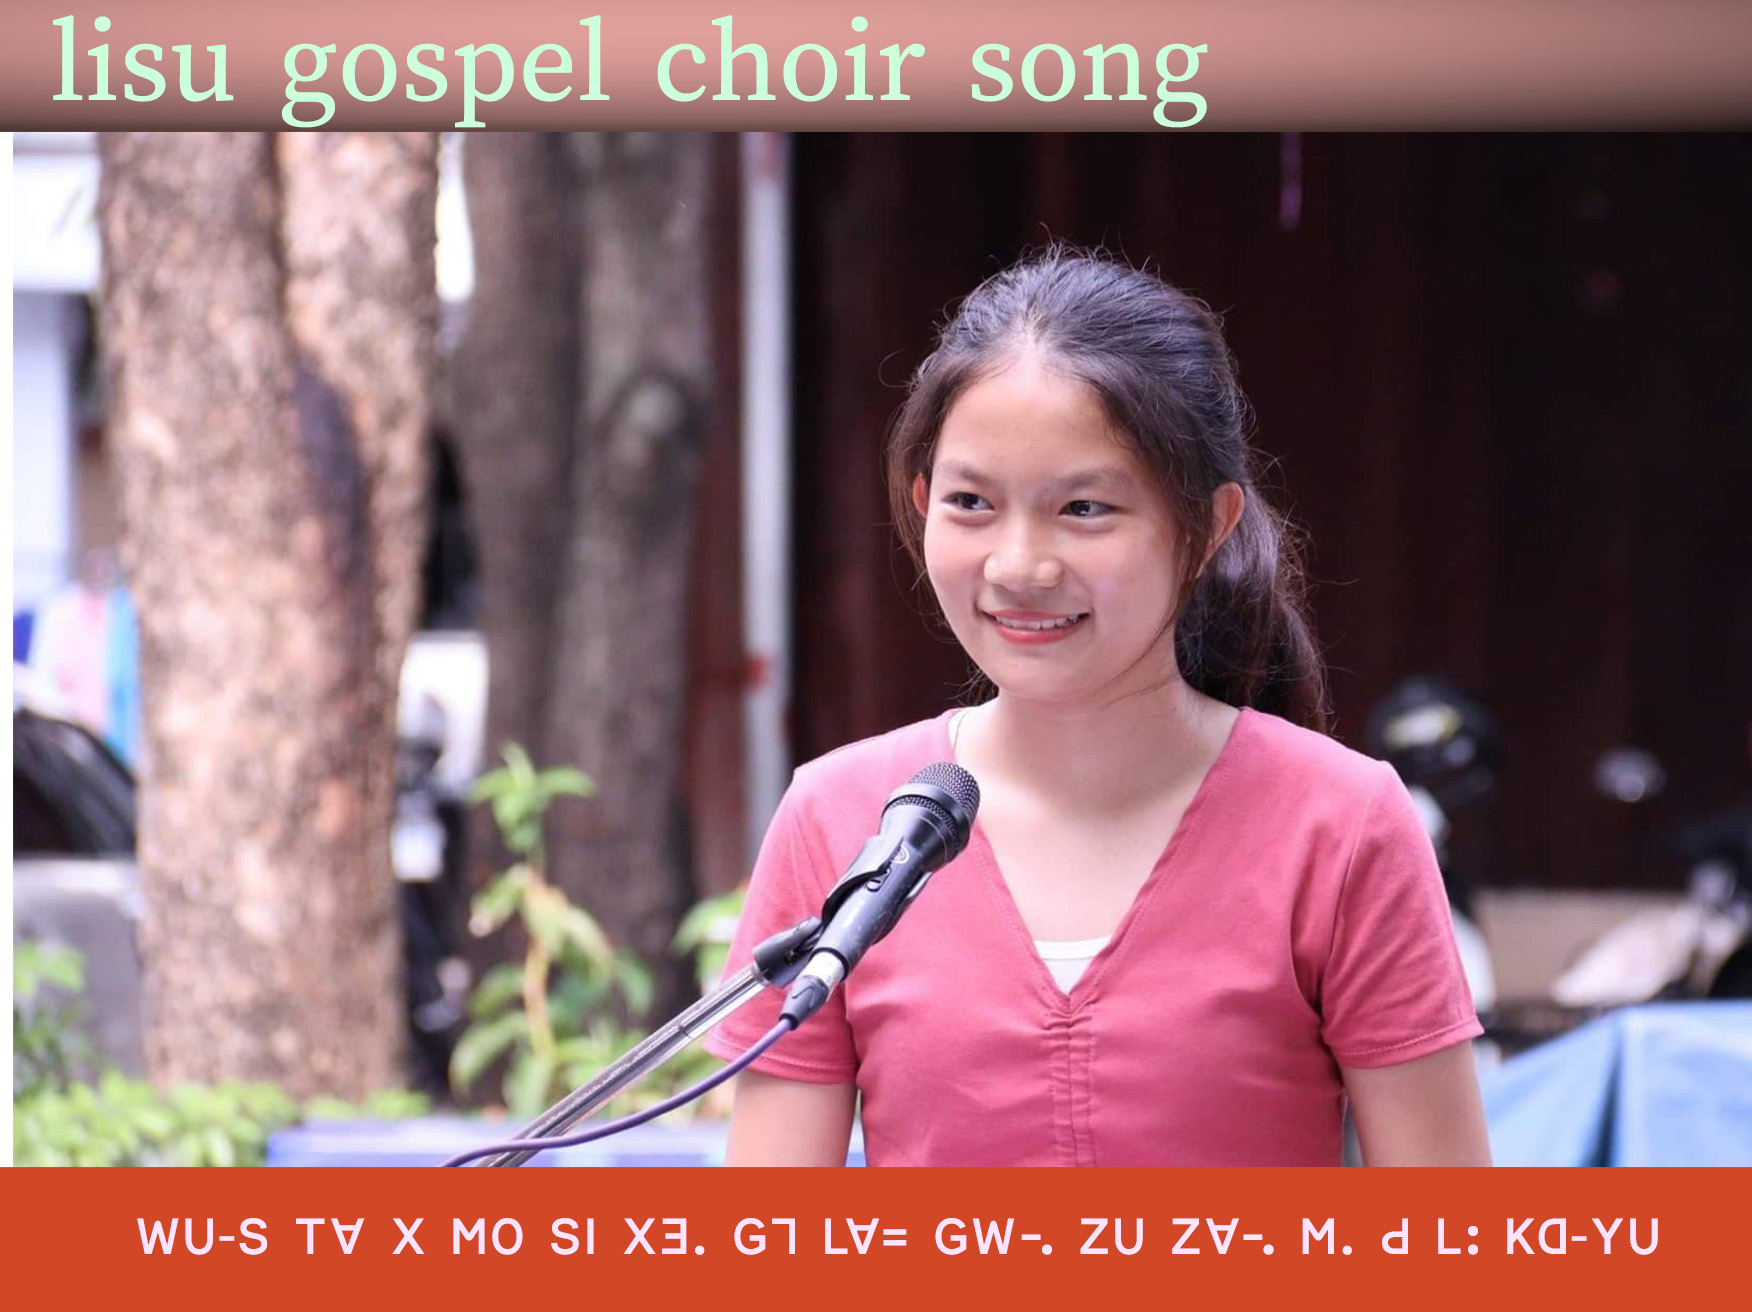 lisu gospel song ꓪꓴ‐ꓢ ꓔꓯ ꓫ ꓟꓳ ꓢꓲ ꓫꓱ. ꓖꓶ ꓡꓯ꓿ ꓖꓪ꓾ ꓜꓴ ꓜꓯ꓾ ꓟ. ꓒ ꓡꓽ ꓗꓷ‐ꓬꓴ